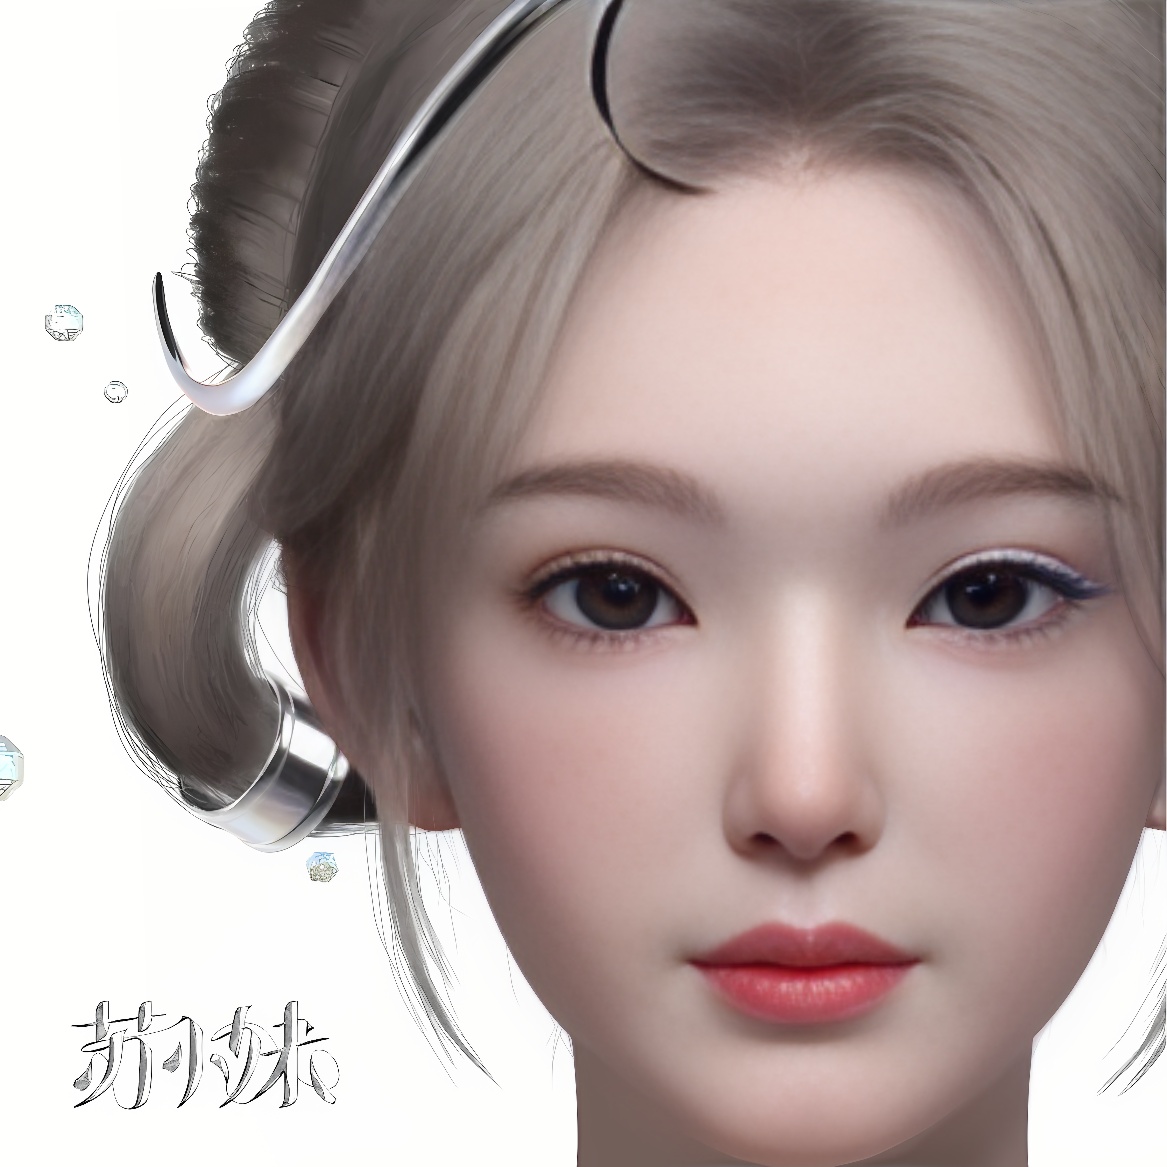 这是一张描绘年轻女性的逼真CG艺术图像，特征是清晰的面部细节、深邃眼睛和光滑皮肤。头发部分有未完全展示的装饰。